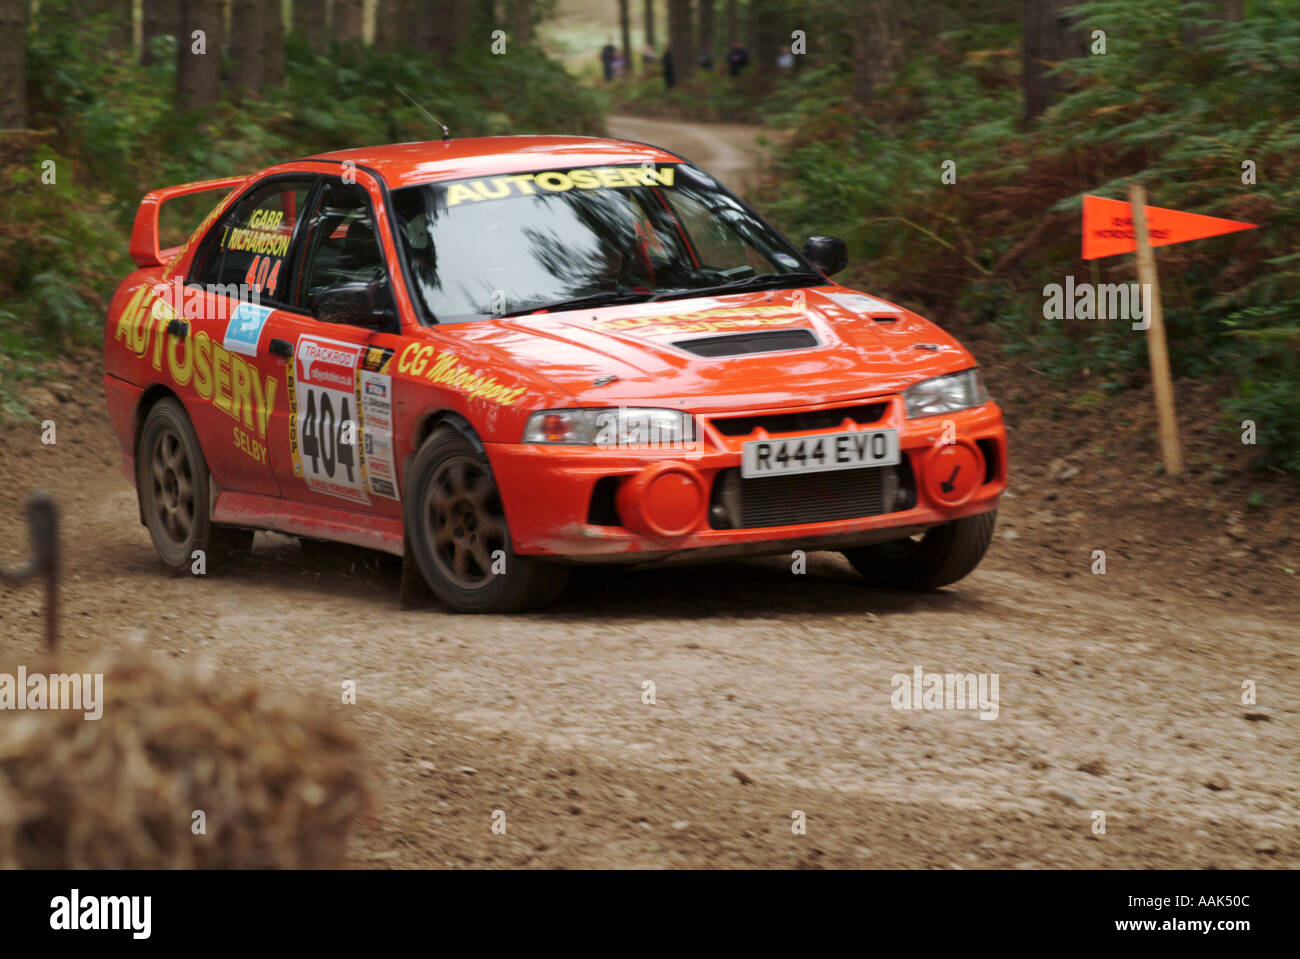 Mitsubishi Evo evolution voiture rallye off road de ralliement à une vitesse rapide pilote de boue parrainage parrainer d'intérêt masculin ni de dalby forest Banque D'Images